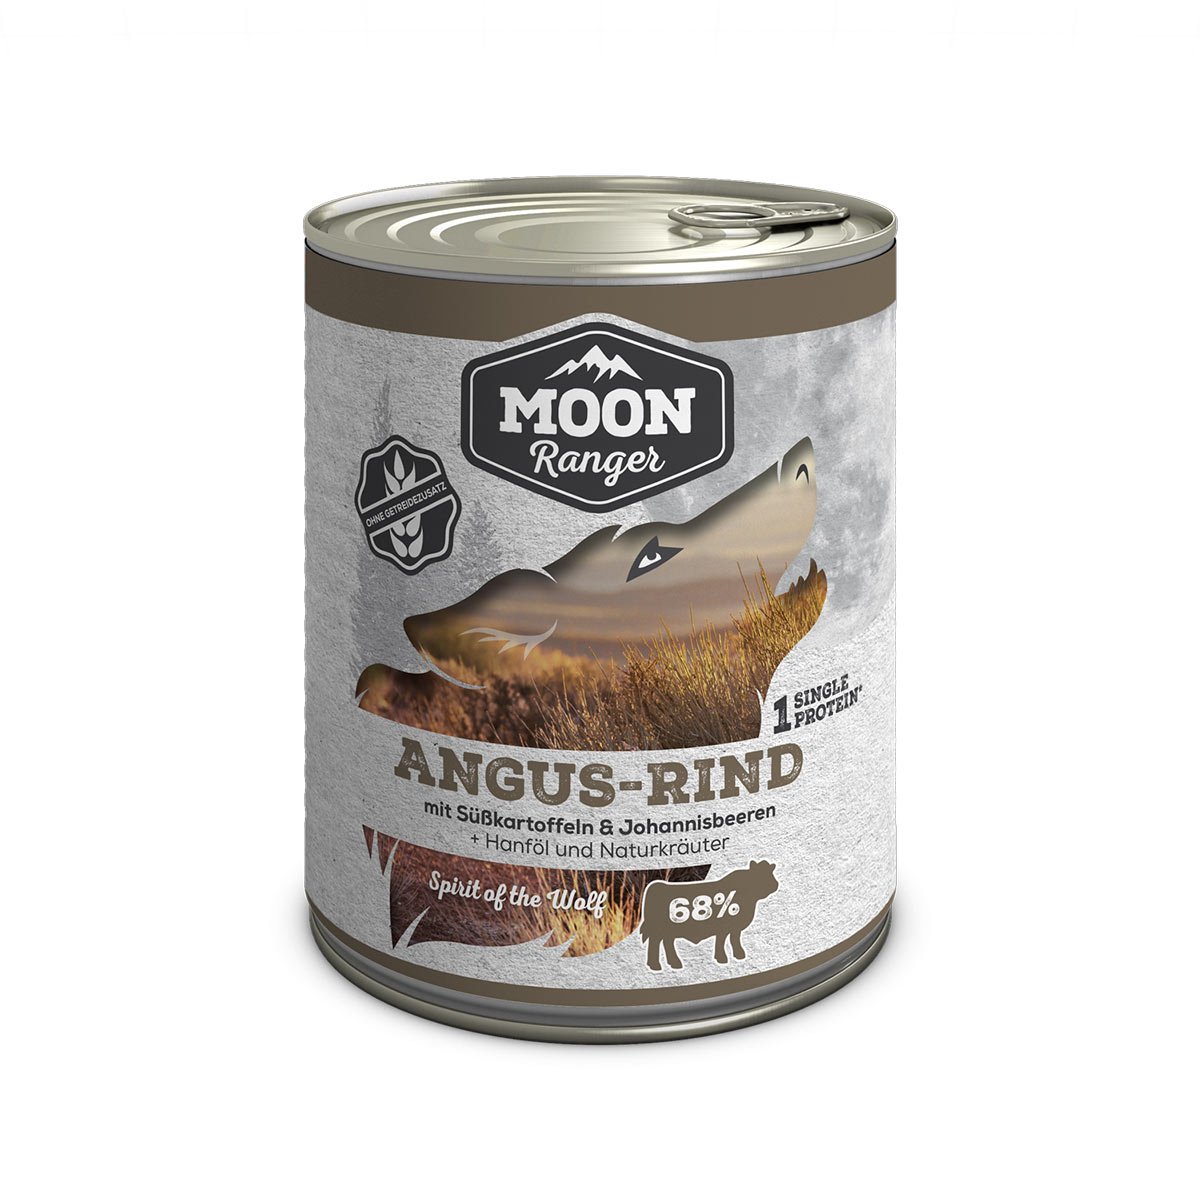 MOON Ranger Angus-Rind mit Süßkartoffeln 12x800g von MOON RANGER